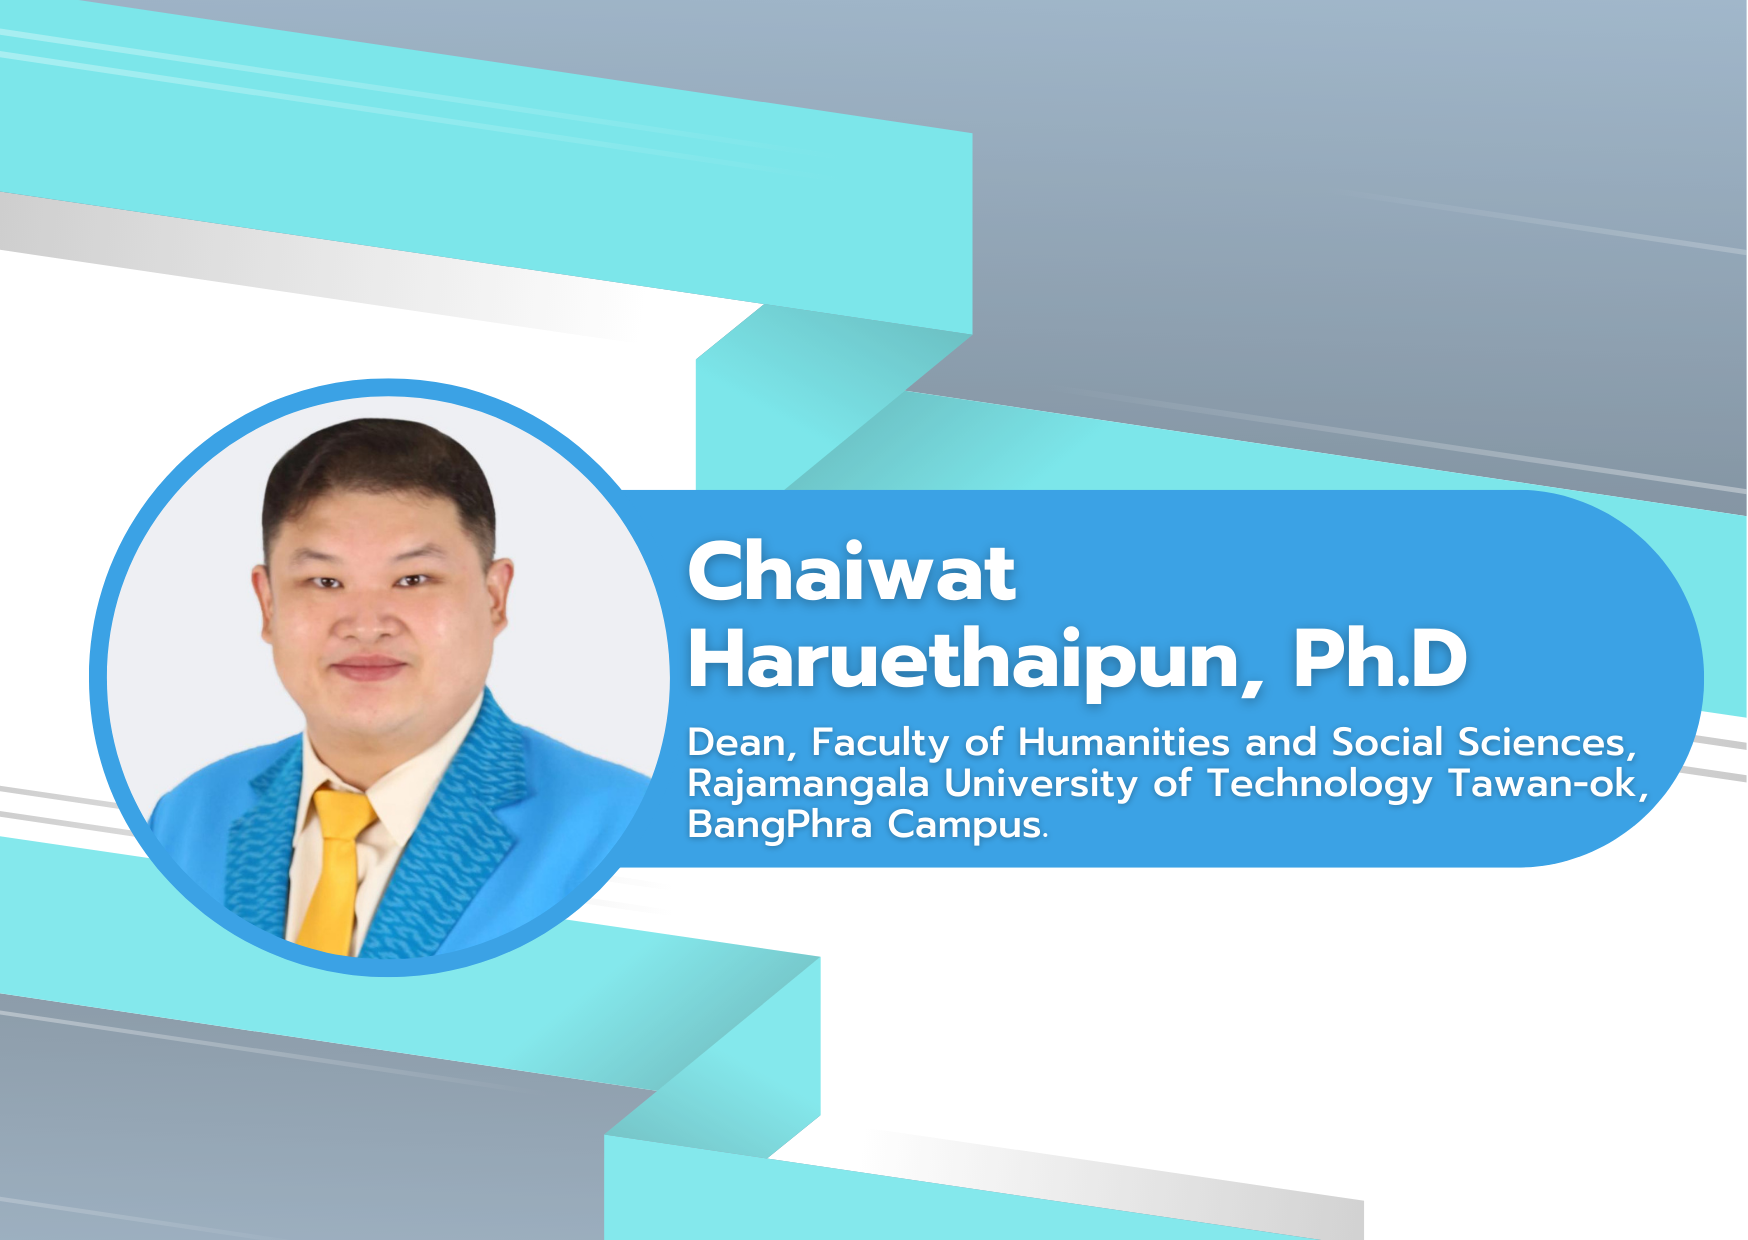 Chaiwat Haruethaipun, Ph.D